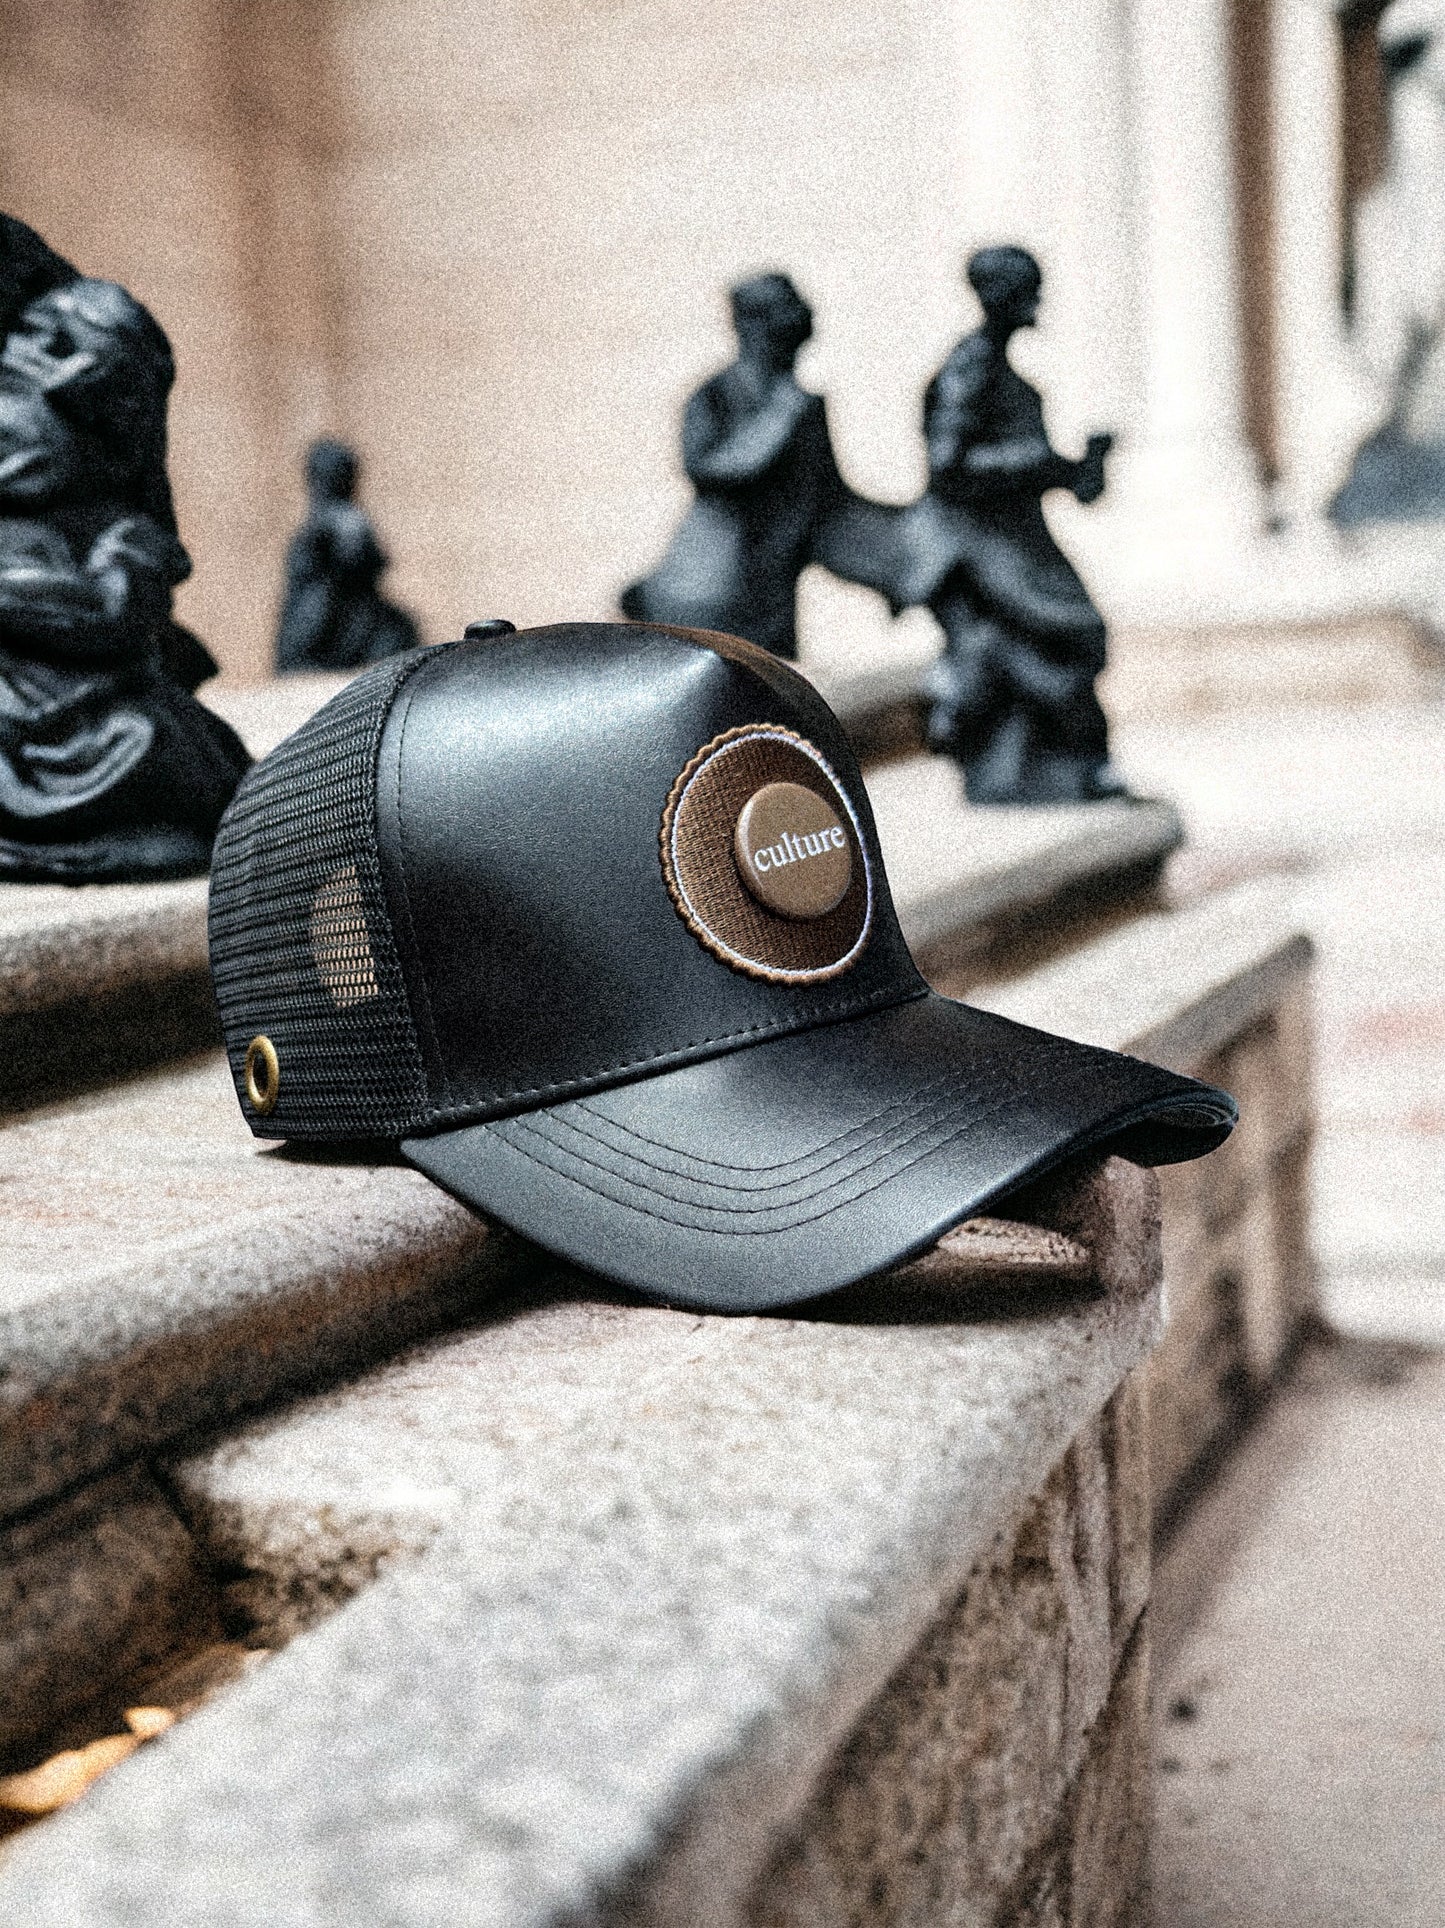 Mr.LIMOU - haut de gamme casquette noir cuir similicuir Eclipse Ebene Culture Edition 5